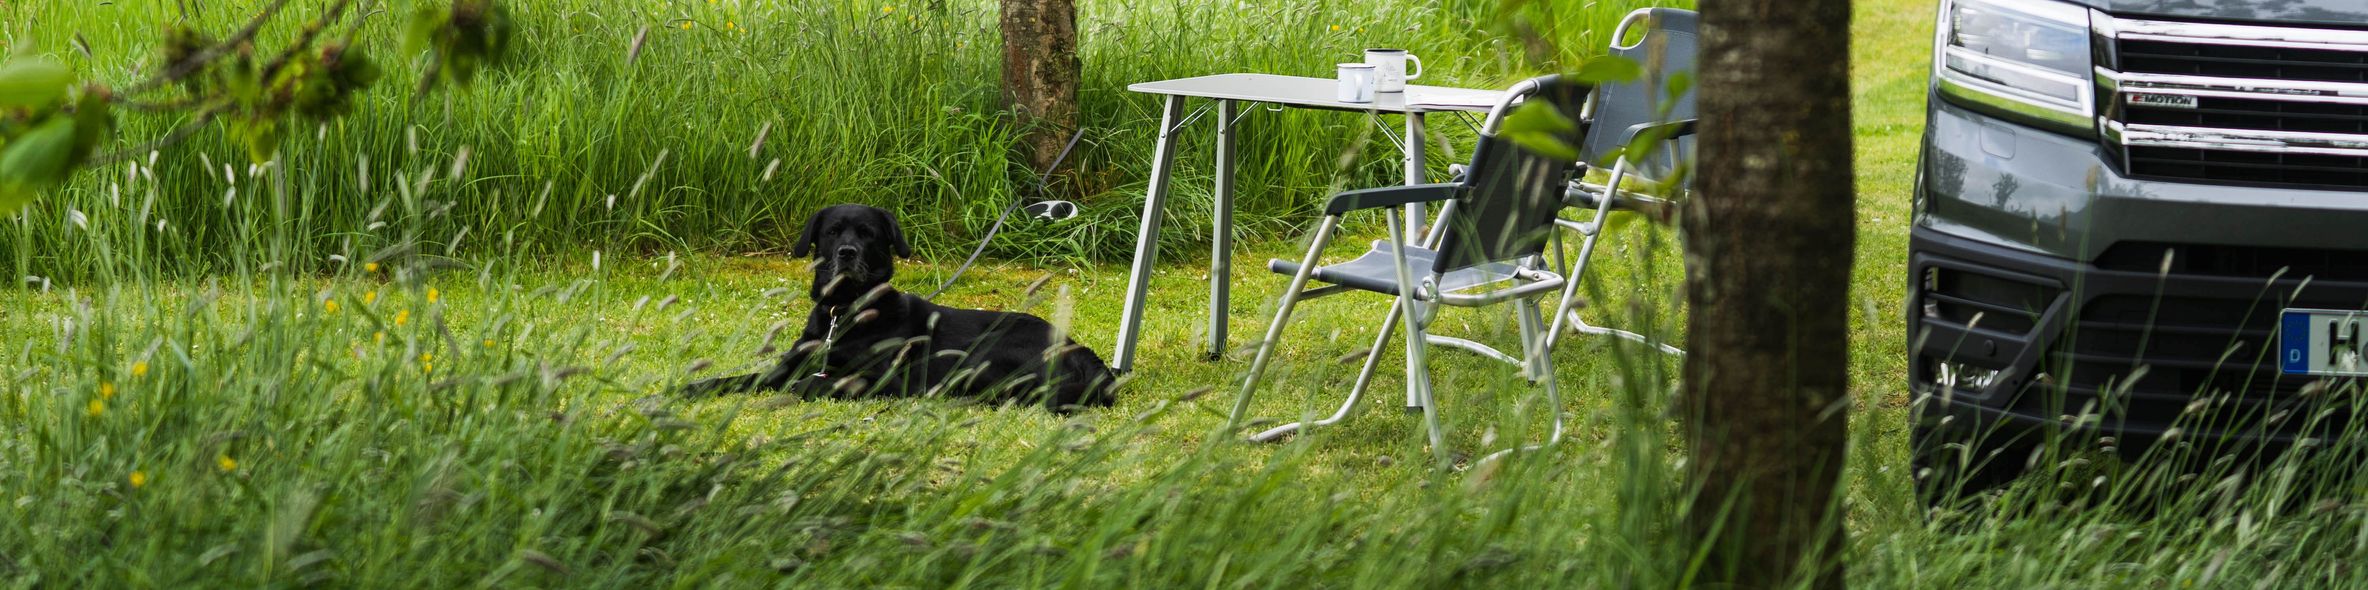 Camping mit Hund am Nordseedeich, Camper steht auf einem Stellplatz in Alleinlage und der Hund liegt vor den Campingstühlen und dem Campingtisch